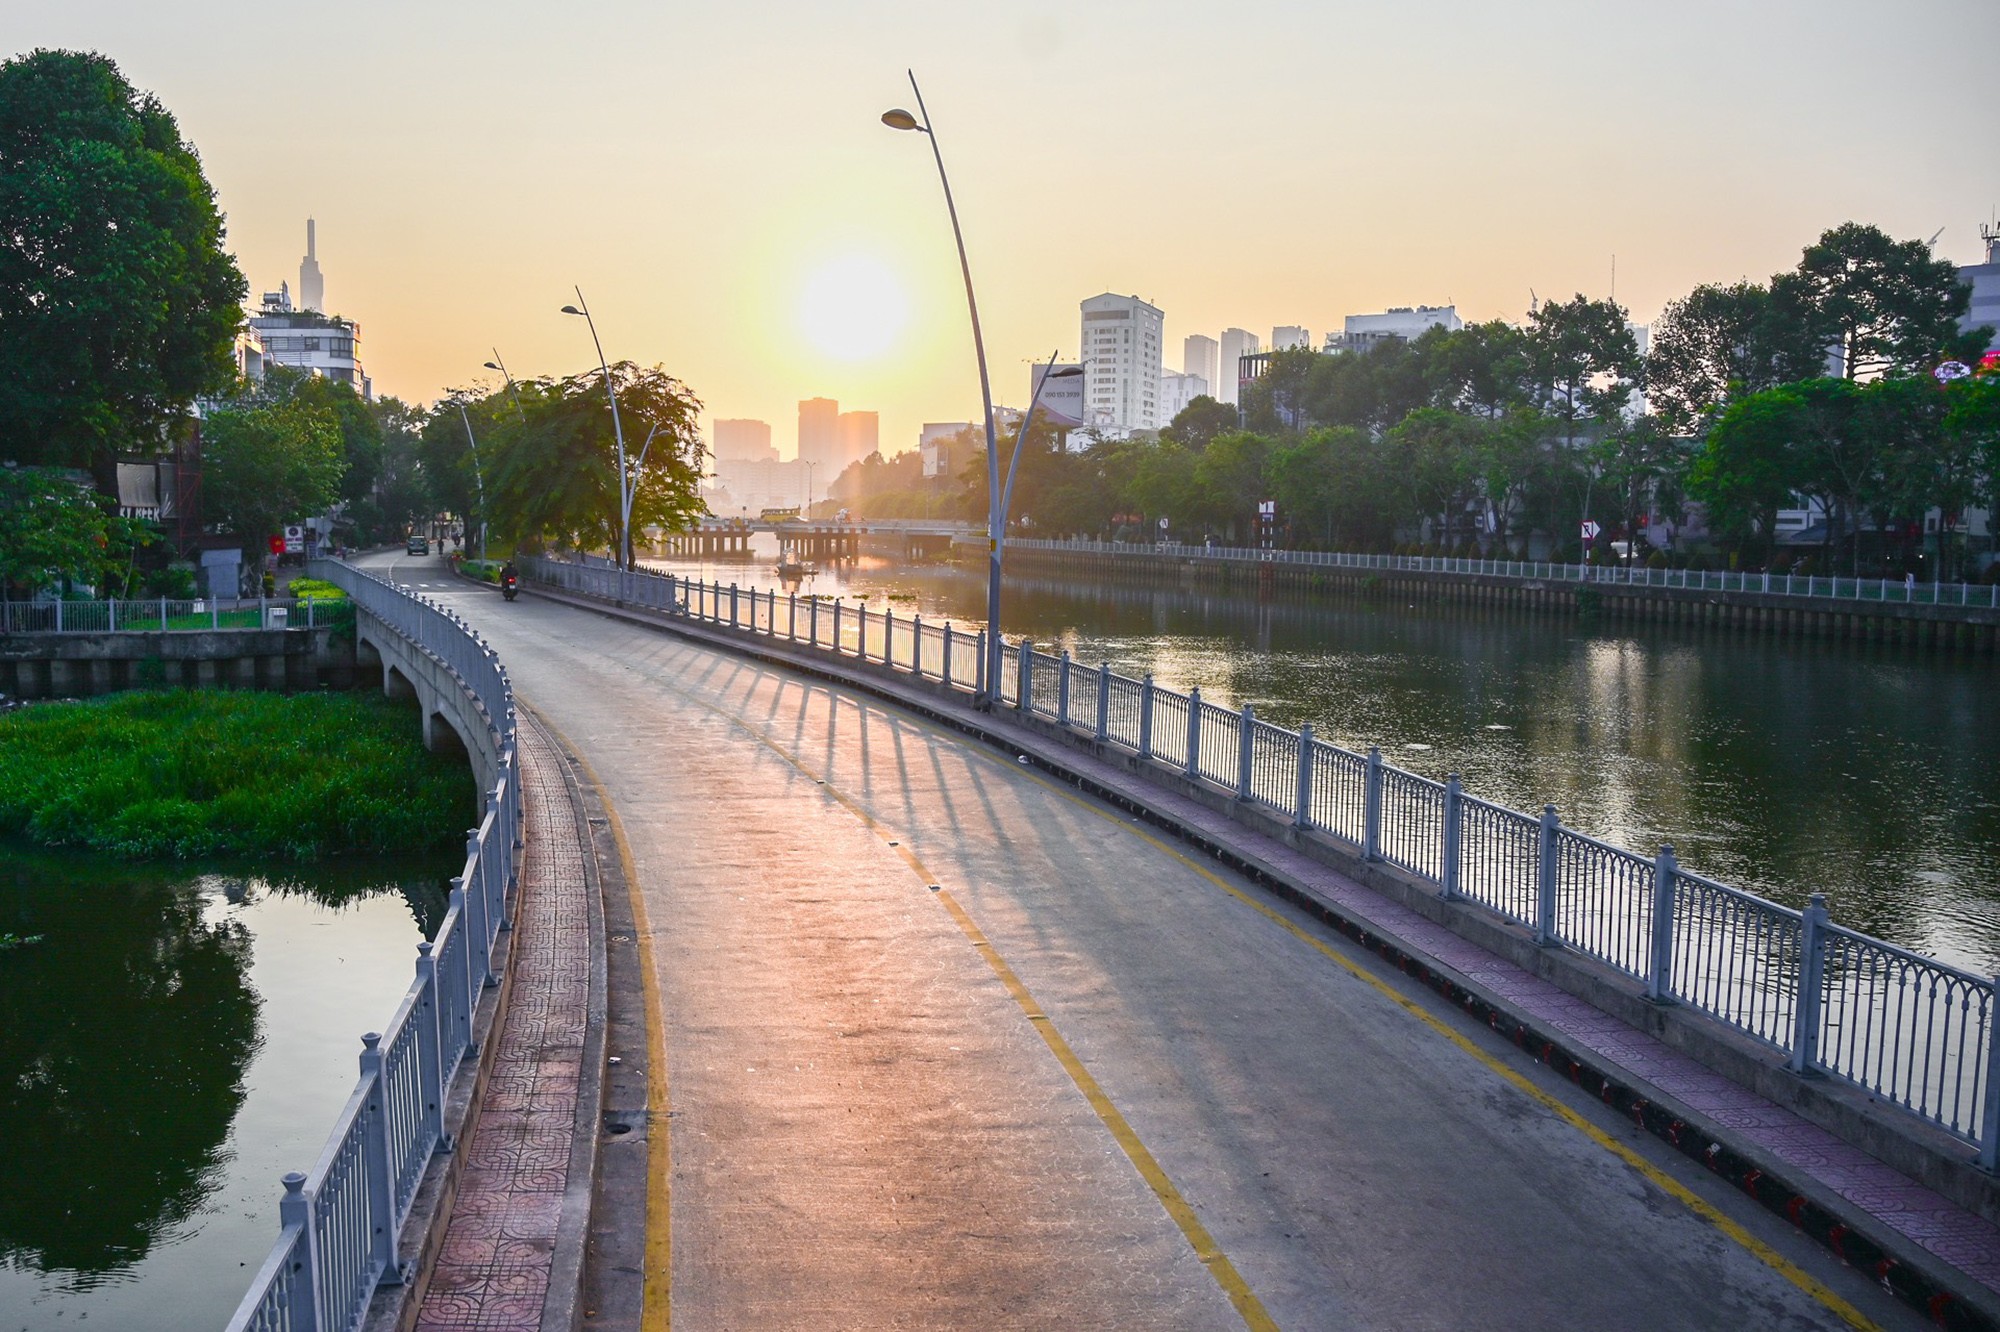 Khoảng 8h, mặt trời lên, ánh nắng chiếu rọi hai bên bờ kênh Nhiêu Lộc – Thị Nghè, hai bên đường Trường Sa và Hoàng Sa, cảnh vật thêm trữ tình khi không có xe cộ qua lại.